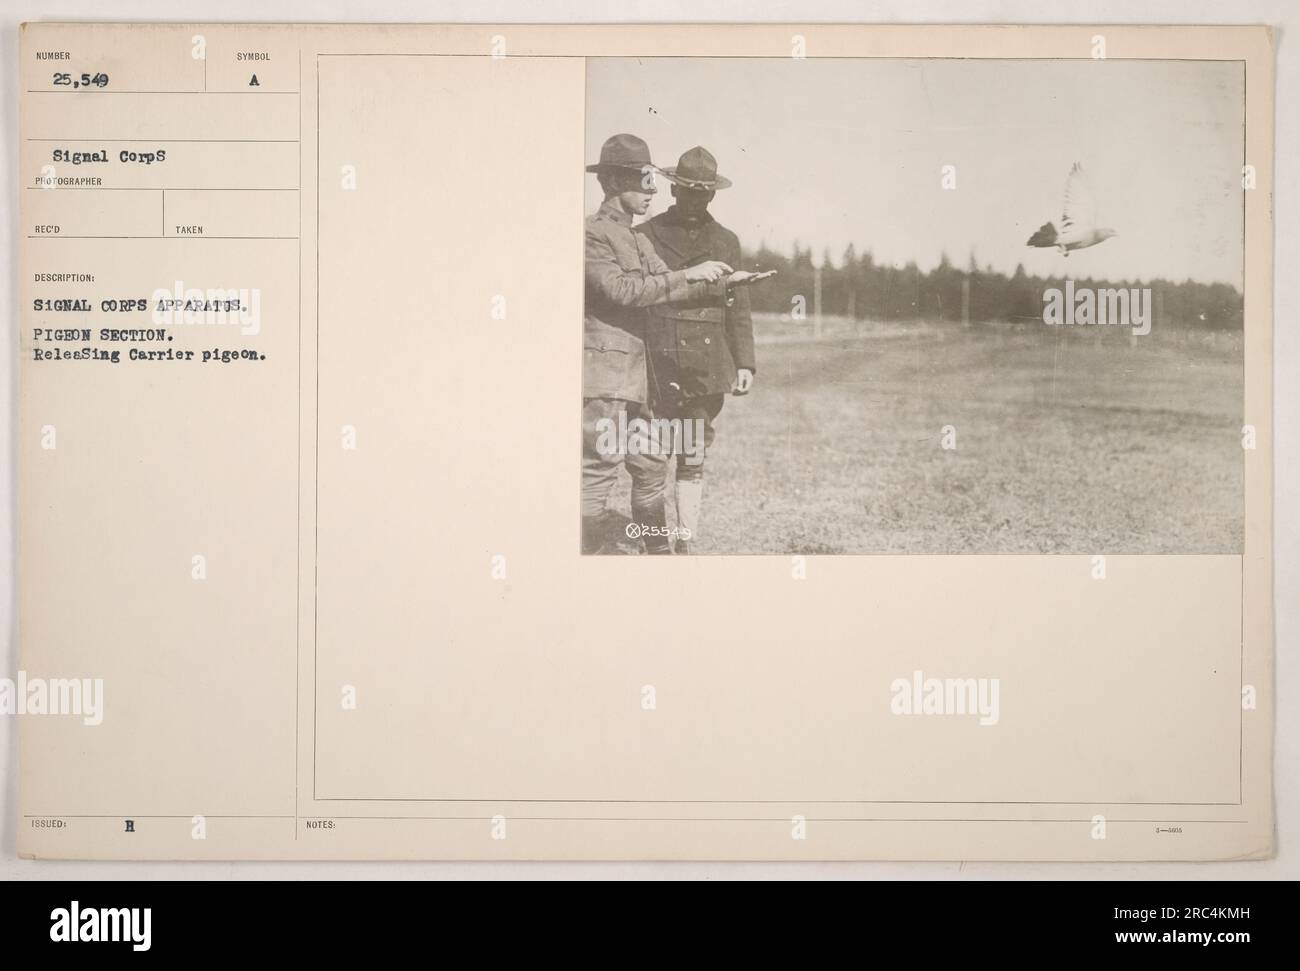 Soldaten, die Brieftauben als Teil der Taubensektion freilassen, mit einem Signalkorps-Gerät. Die Tauben wurden während des Ersten Weltkriegs verwendet, um wichtige Nachrichten über große Entfernungen zu übermitteln. Dieses Foto hat die Nummer 25.549 in der Signalkorps-Sammlung. Stockfoto